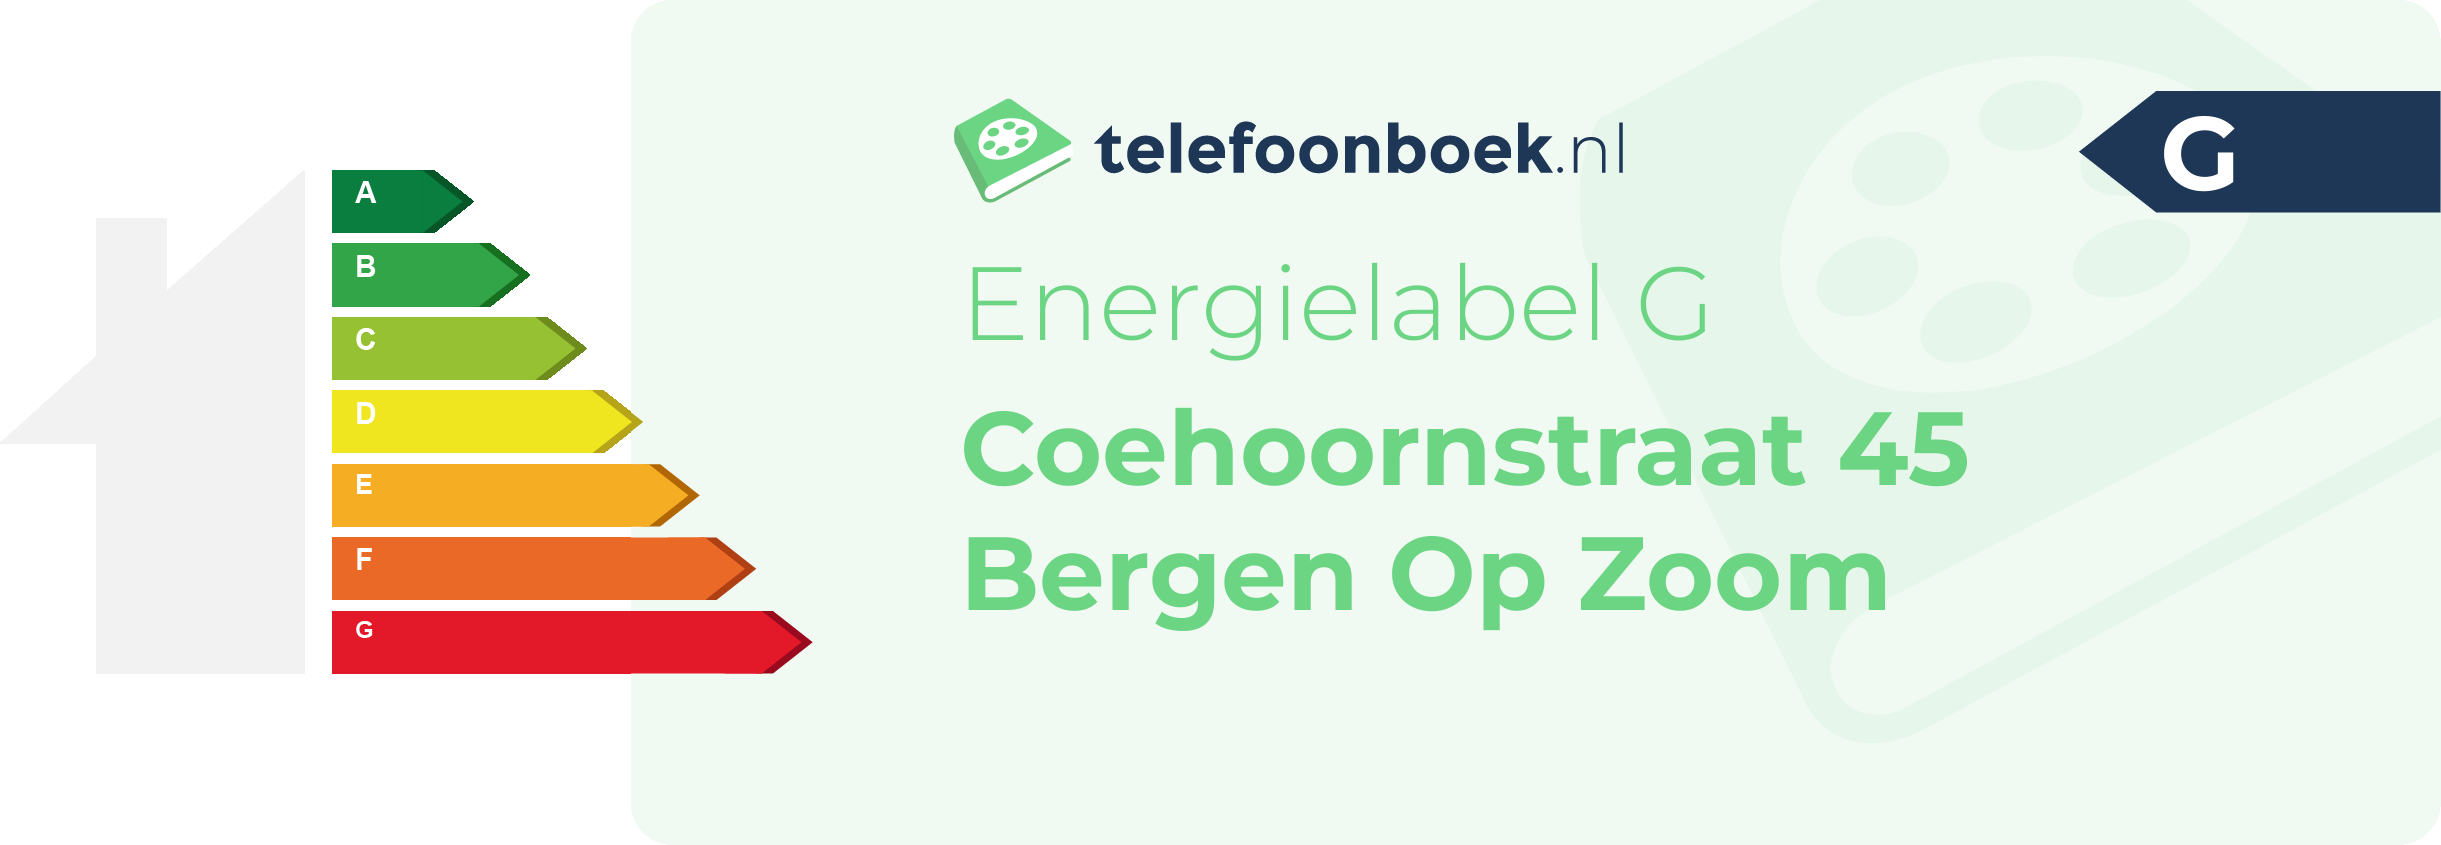 Energielabel Coehoornstraat 45 Bergen Op Zoom